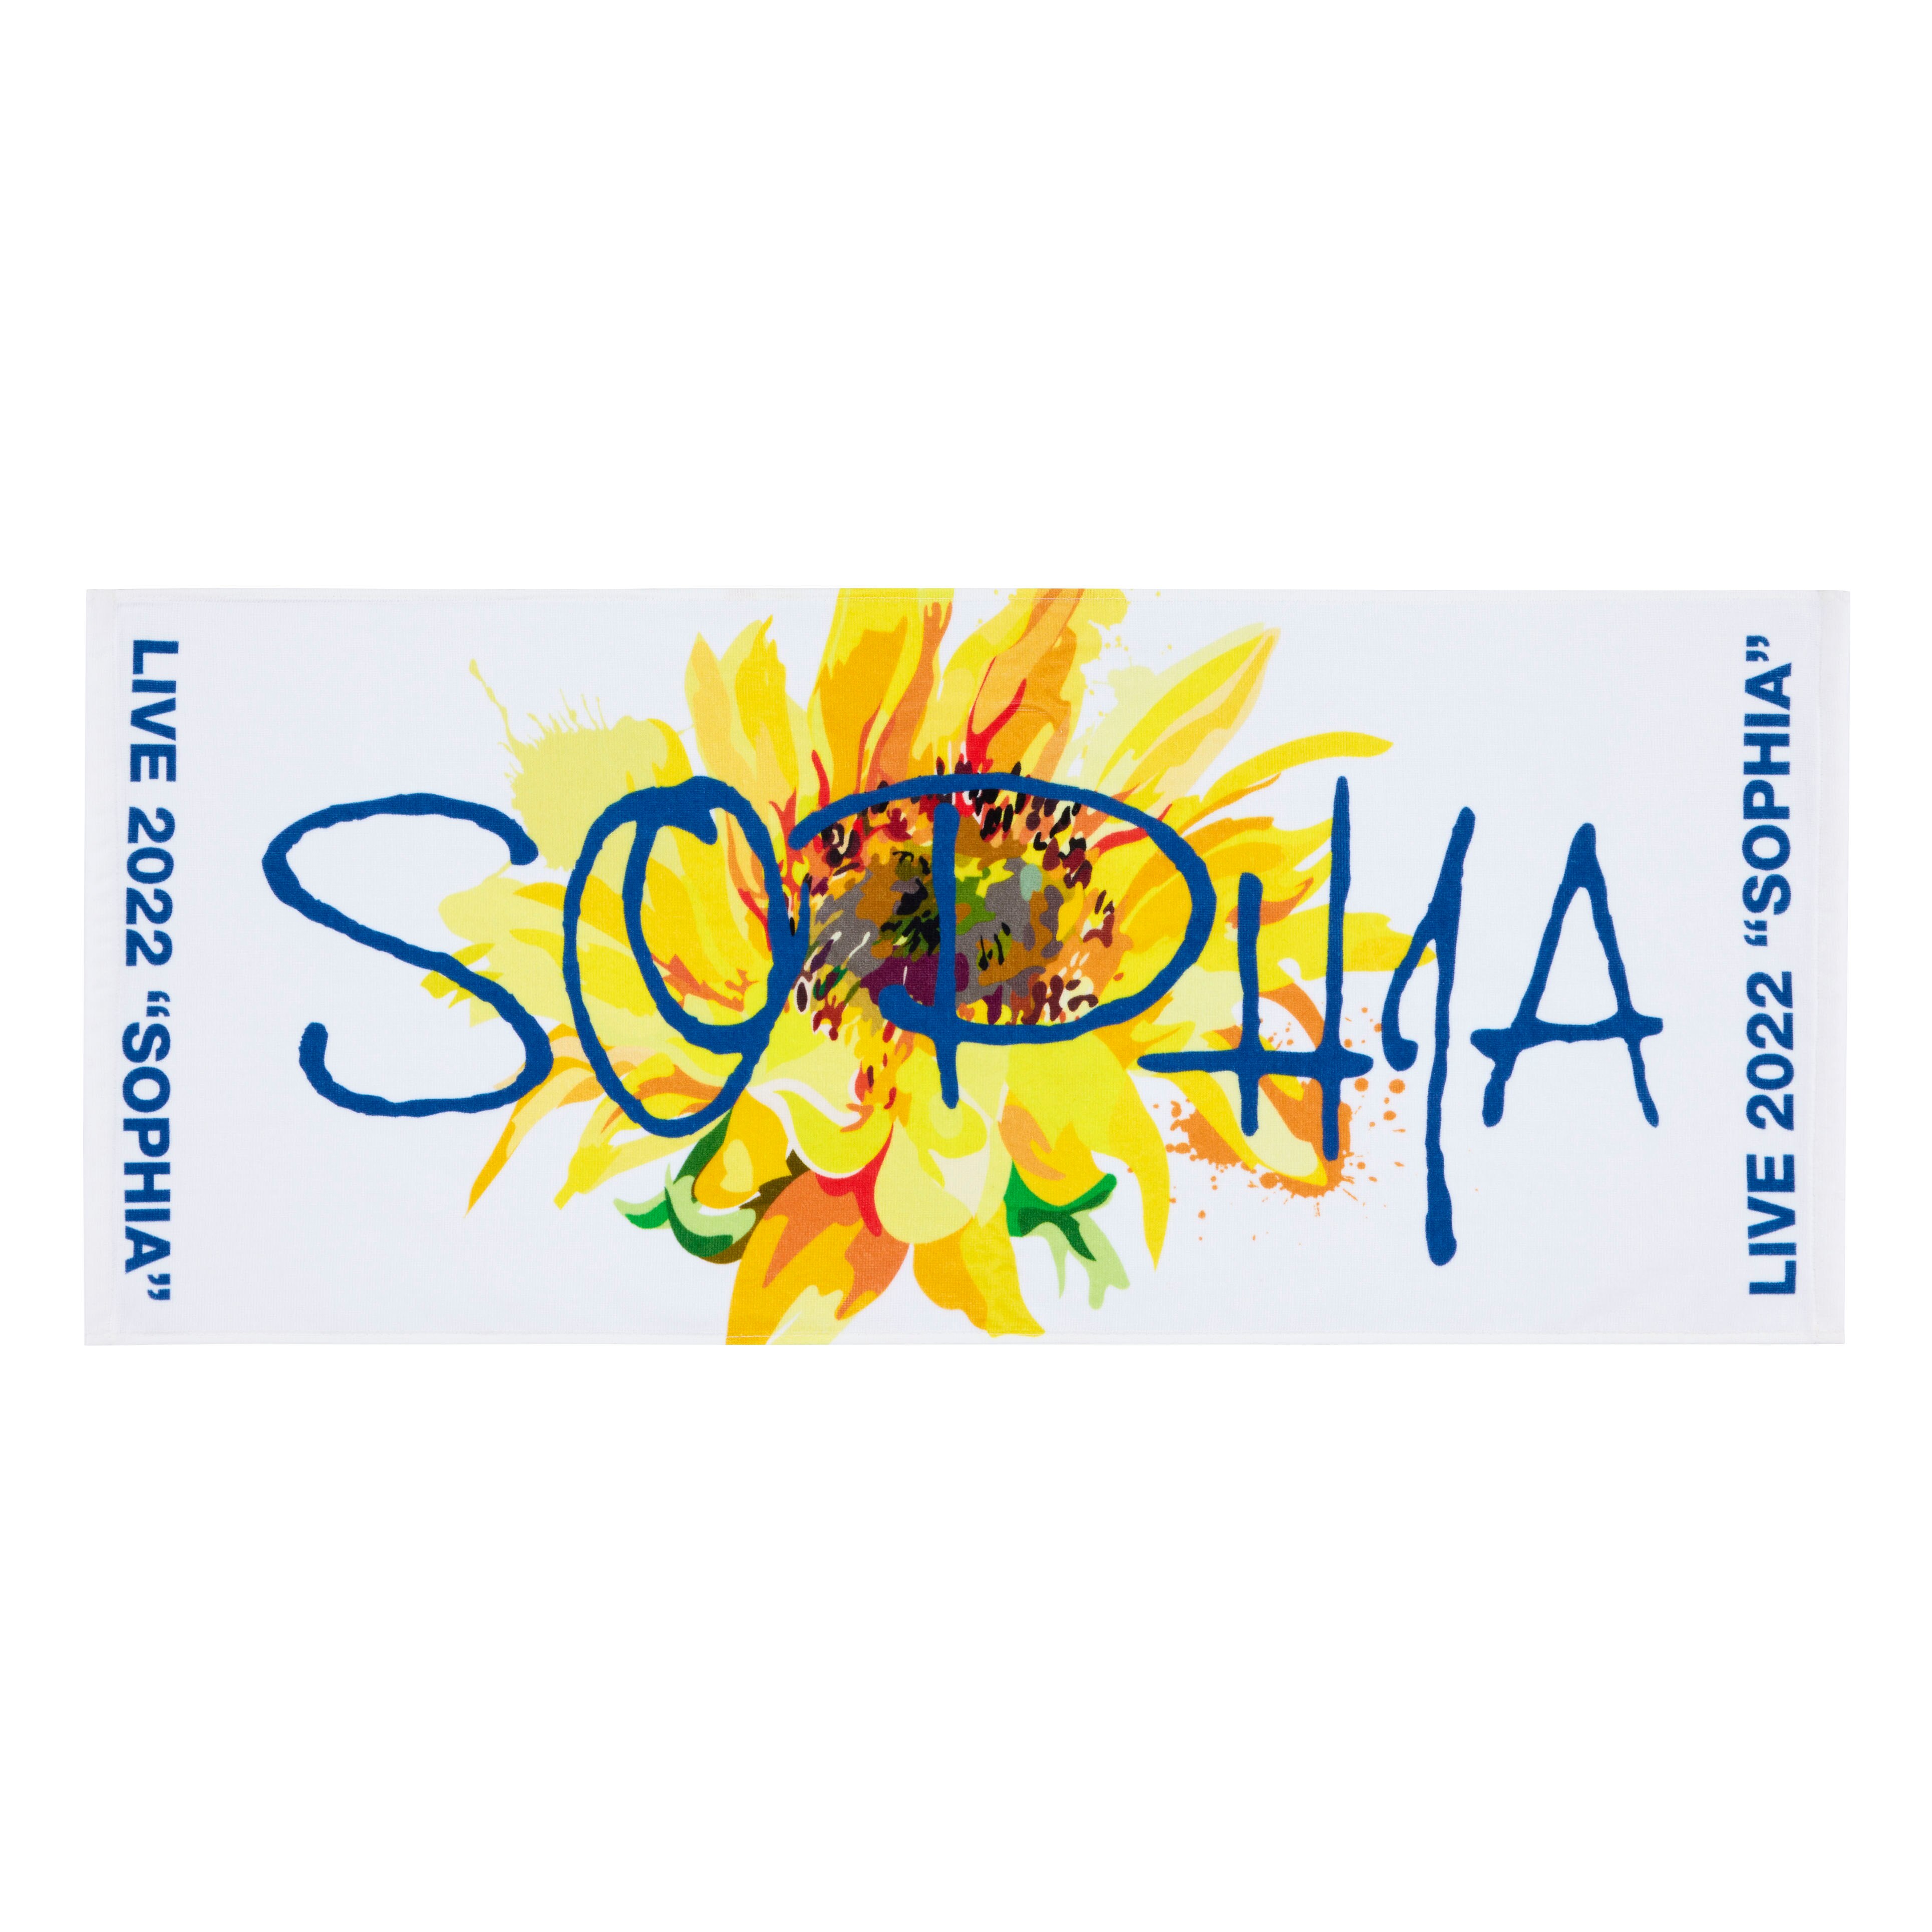 SOPHIA LIVE 2022 “SOPHIA” 記念グッズ発売決定！ - NEWS | SOPHIA